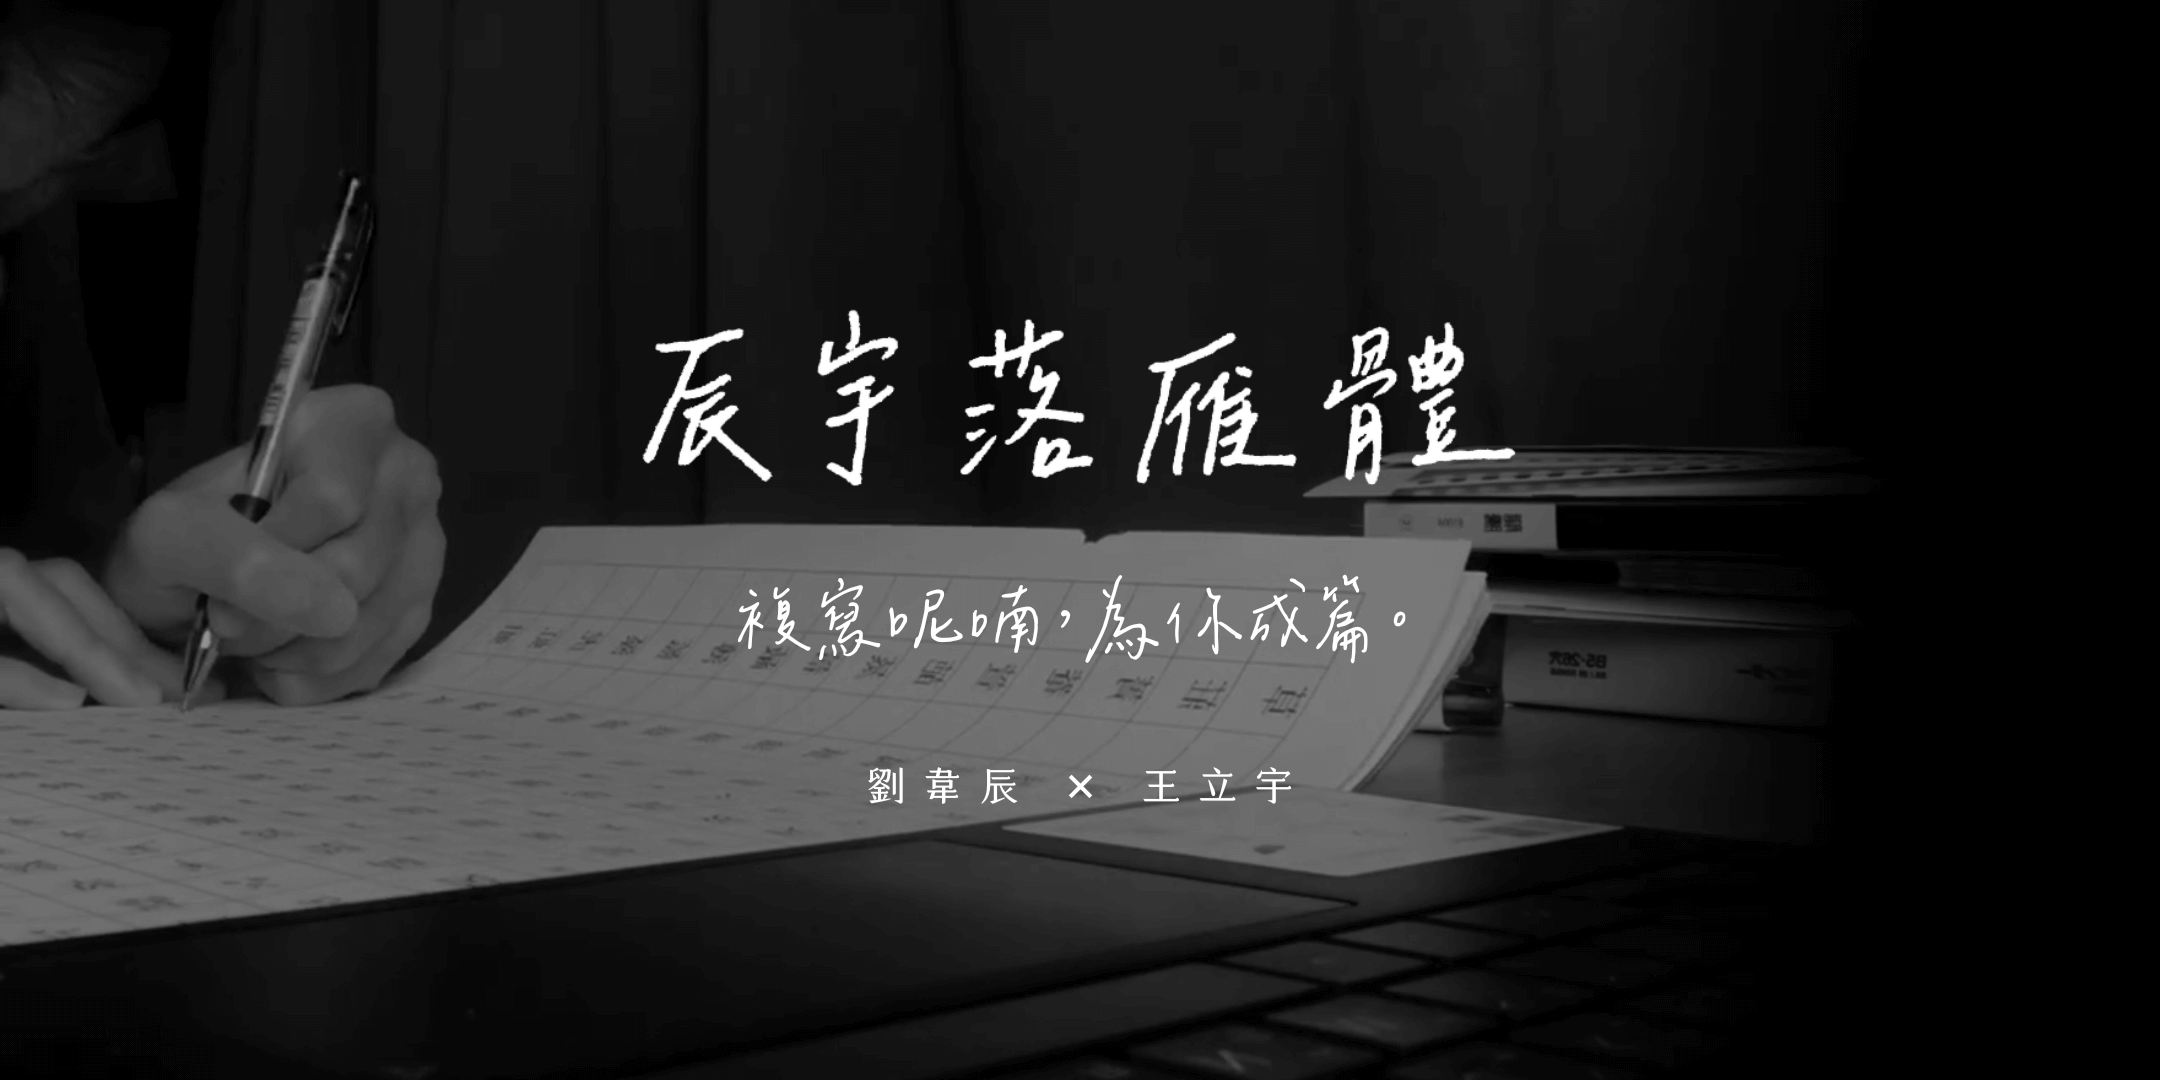 辰宇落雁體免費中文開源授權手寫字型下載，可自由使用、散佈、改作！